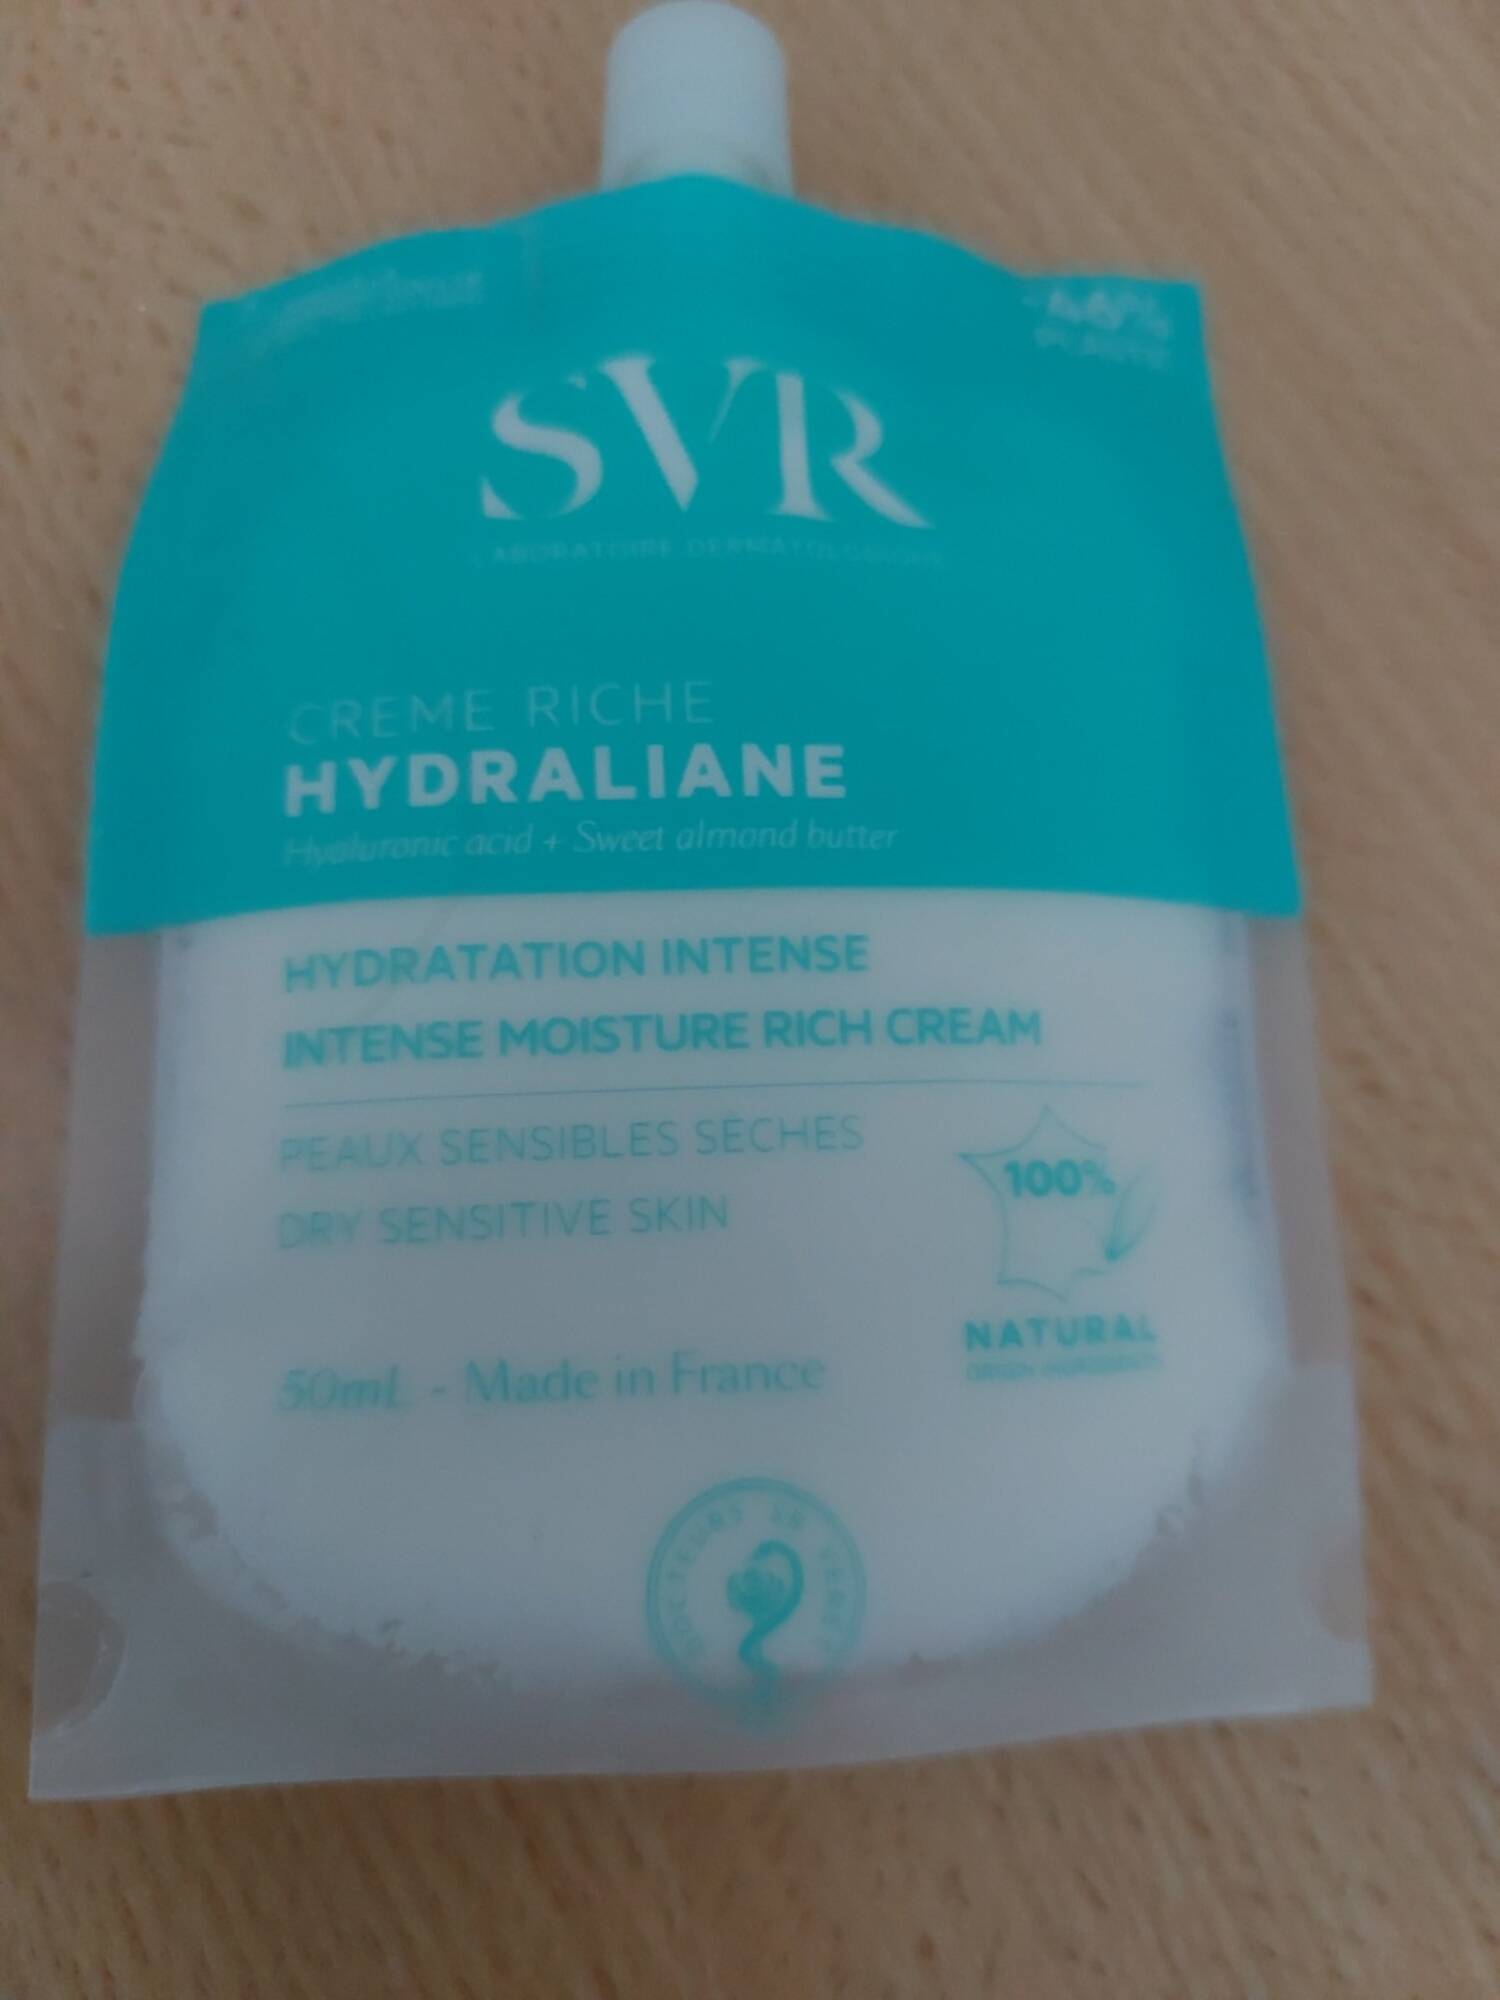 SVR - Hydraliane - Créme riche hydratation intense